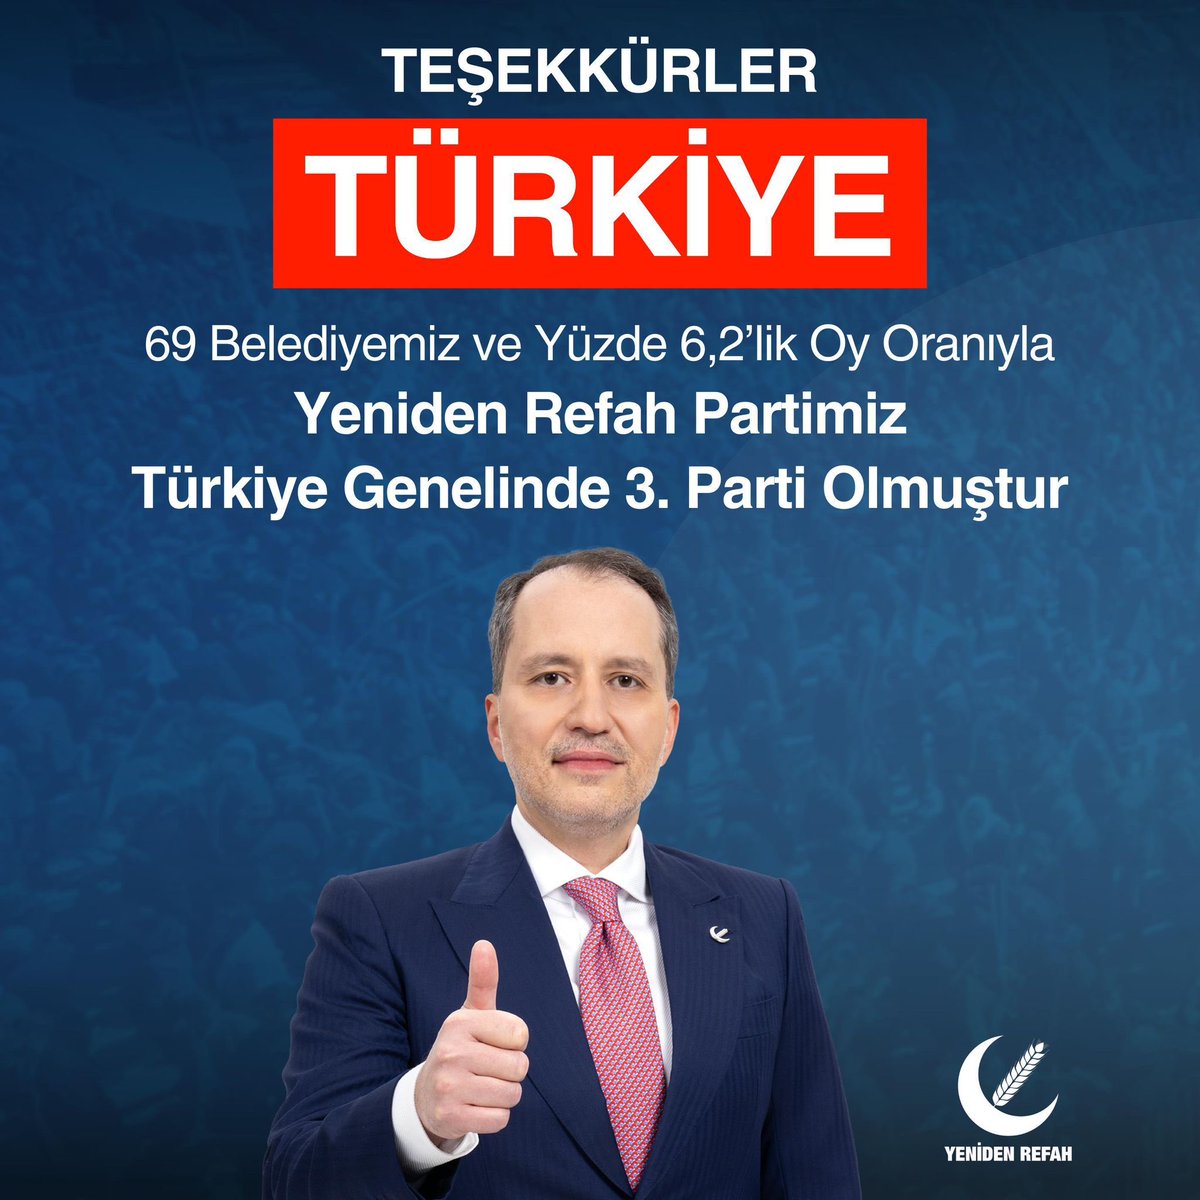 Teşekkürler Türkiye 🇹🇷🇹🇷🇹🇷